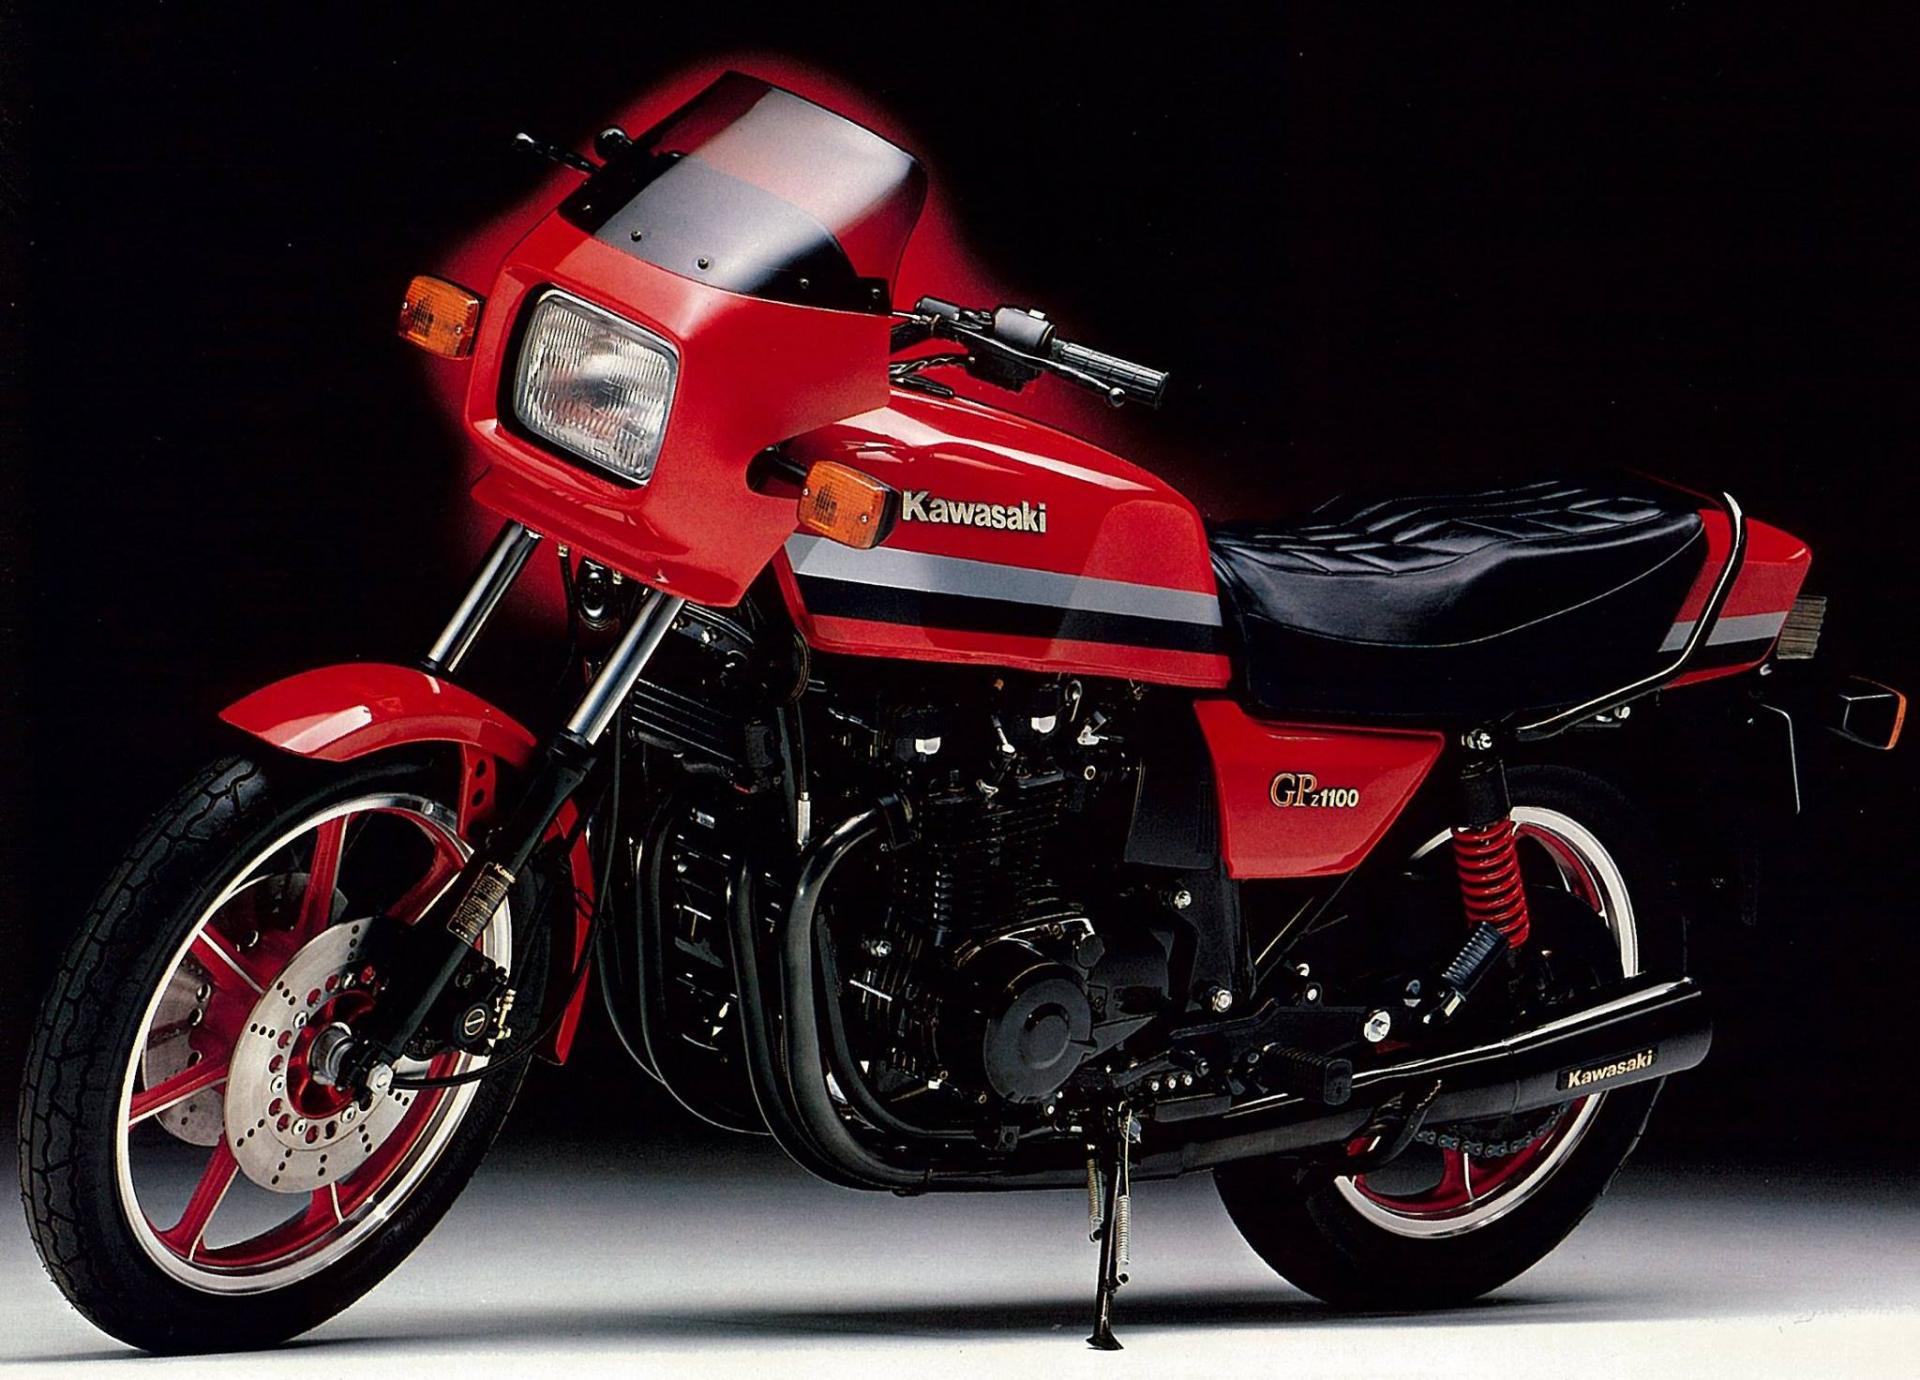 Moto gpz 1100 kawazaki 1982 rouge